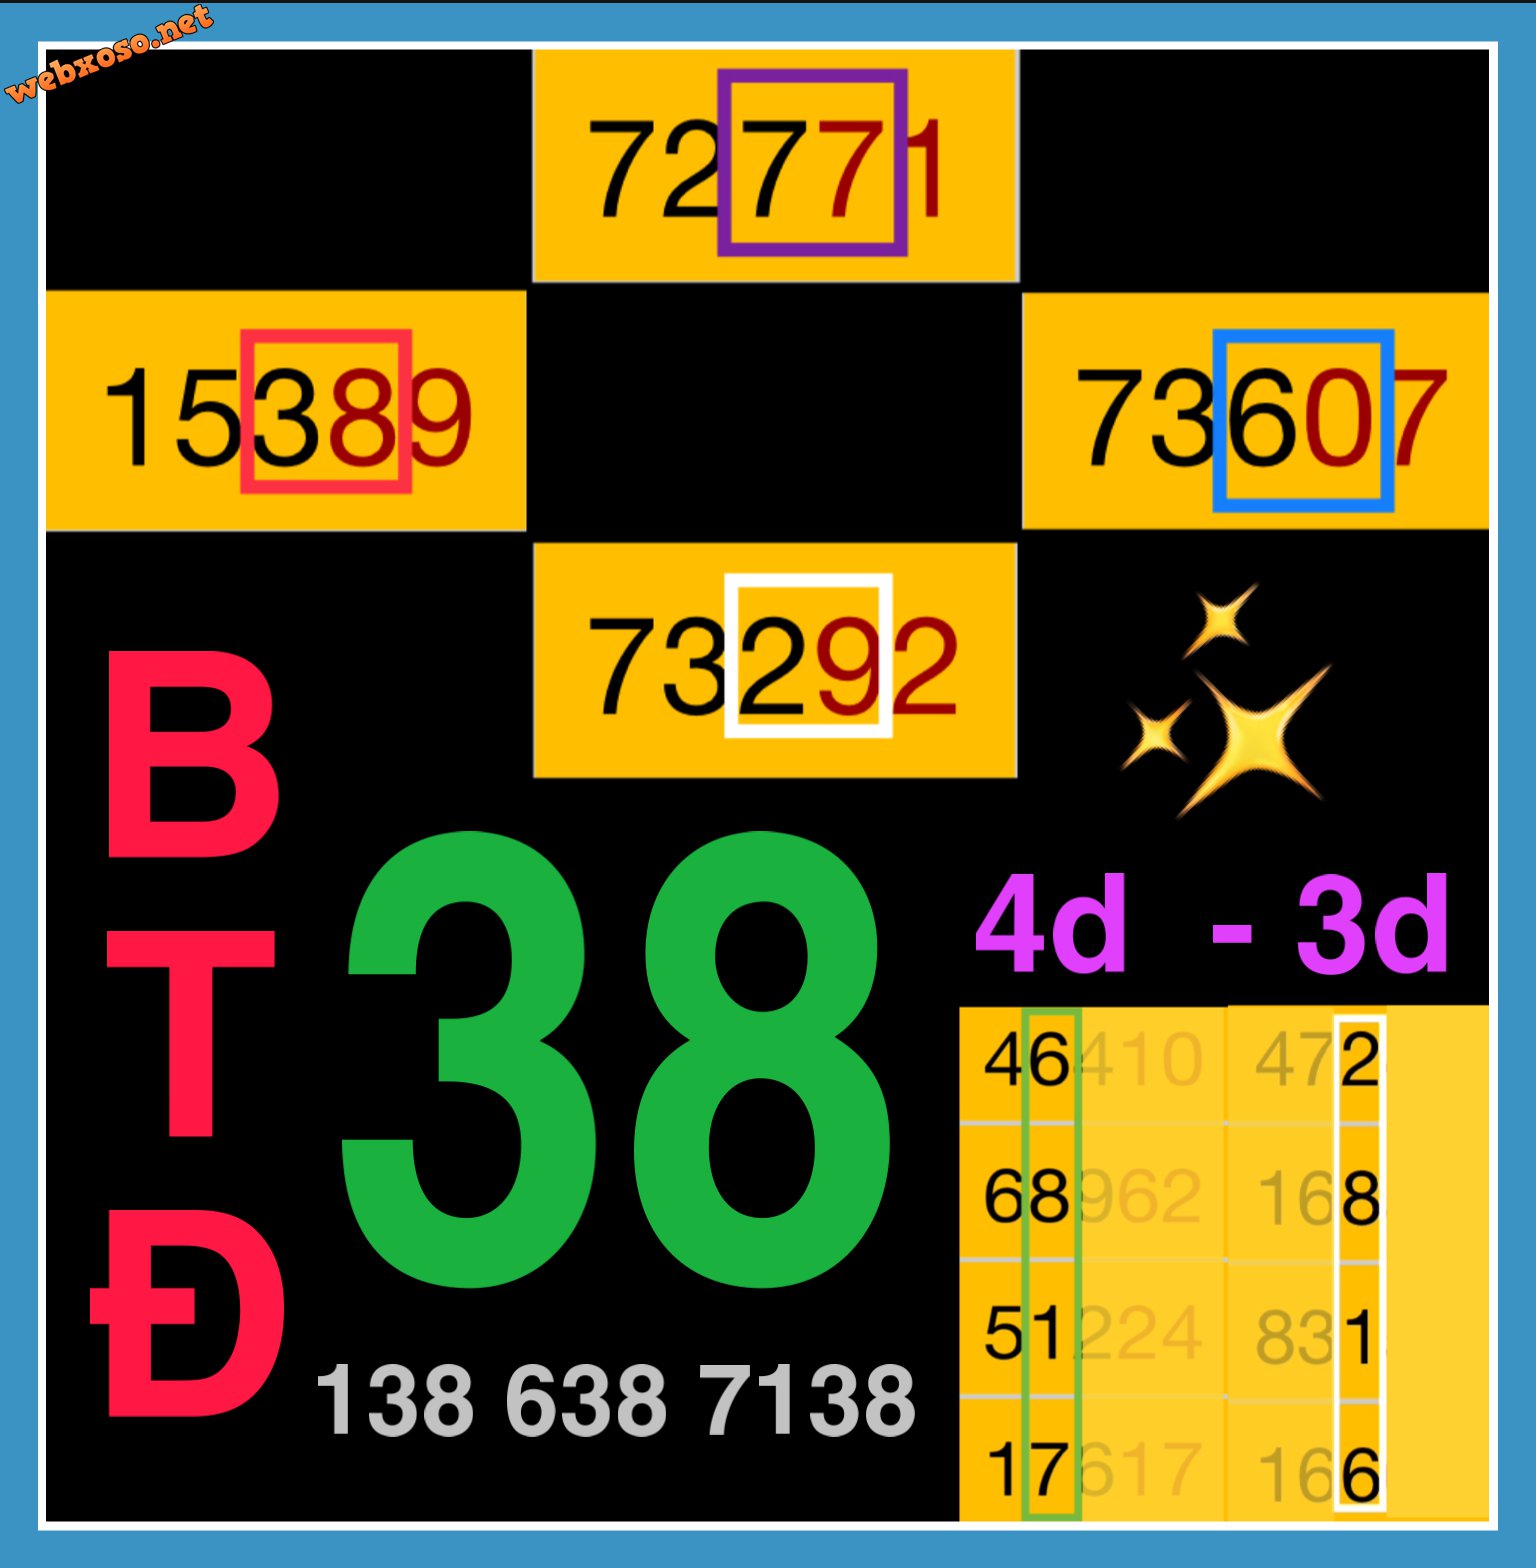 B3691D87-5E31-45D9-B364-5D8EFC74191C.jpeg